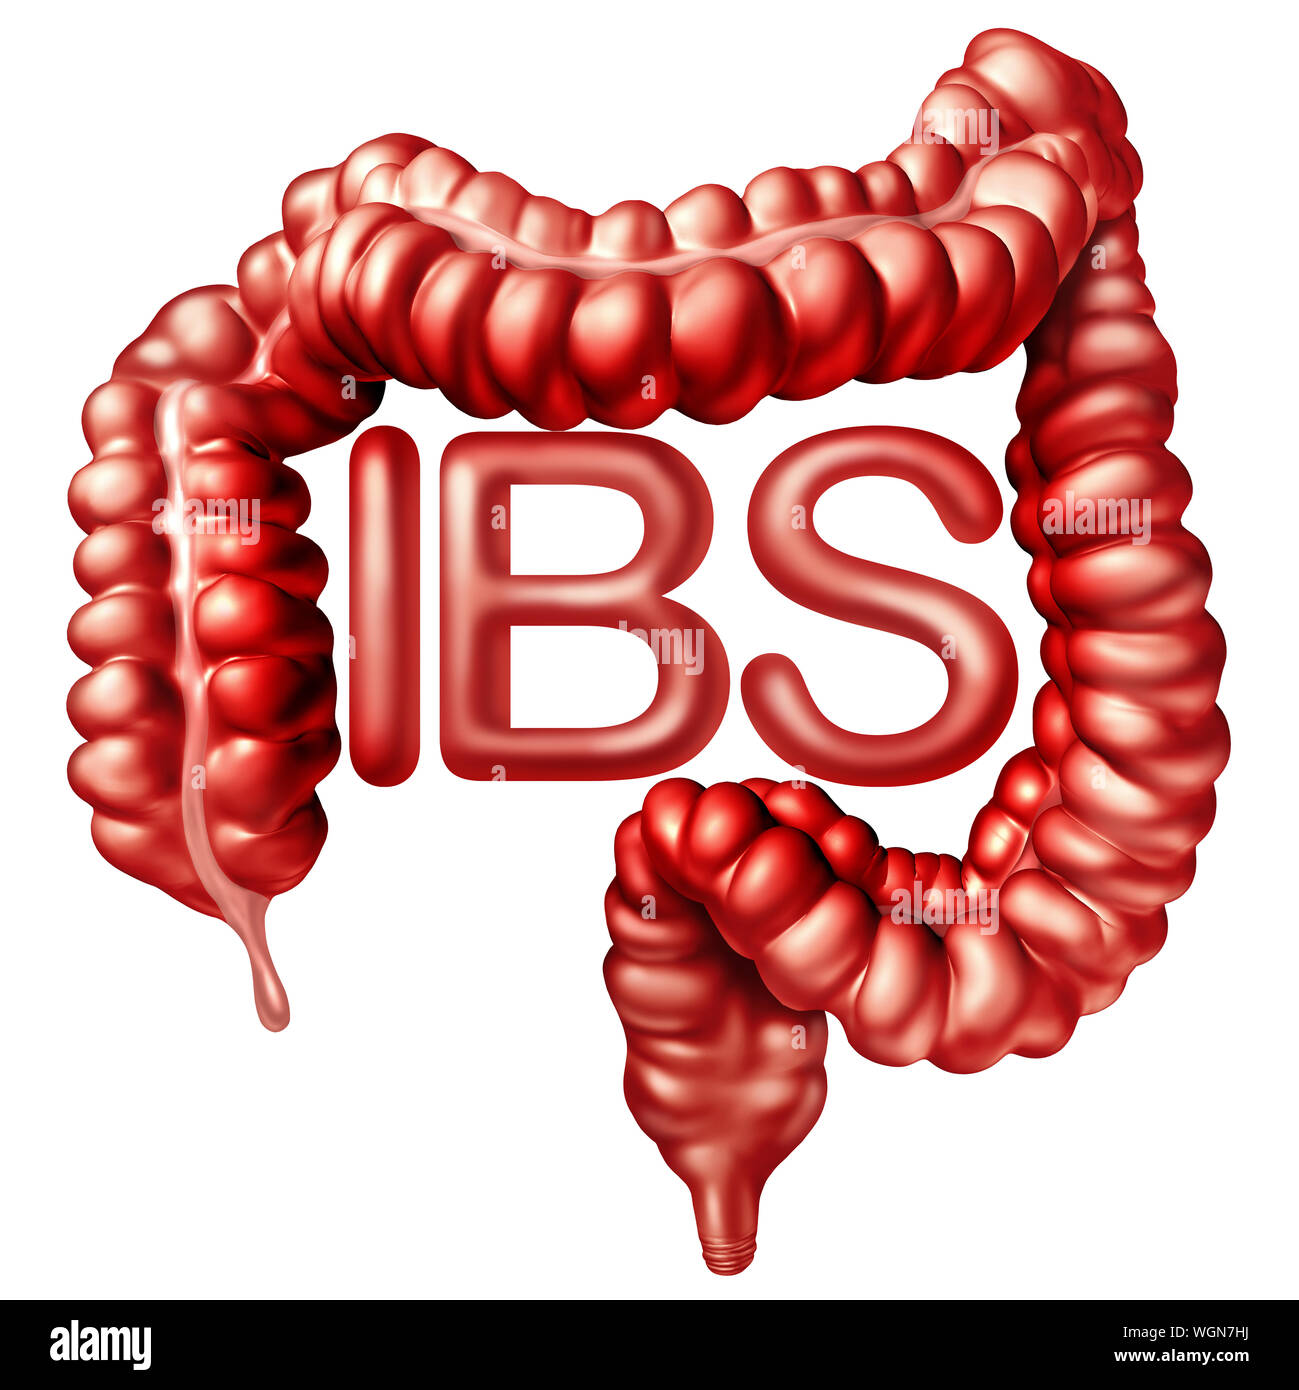 IBS concetto medico come digestione dolorose o sindrome da intestino irritabile e intestino dolore o disagio intestinale infiammazione problema o stitichezza. Foto Stock